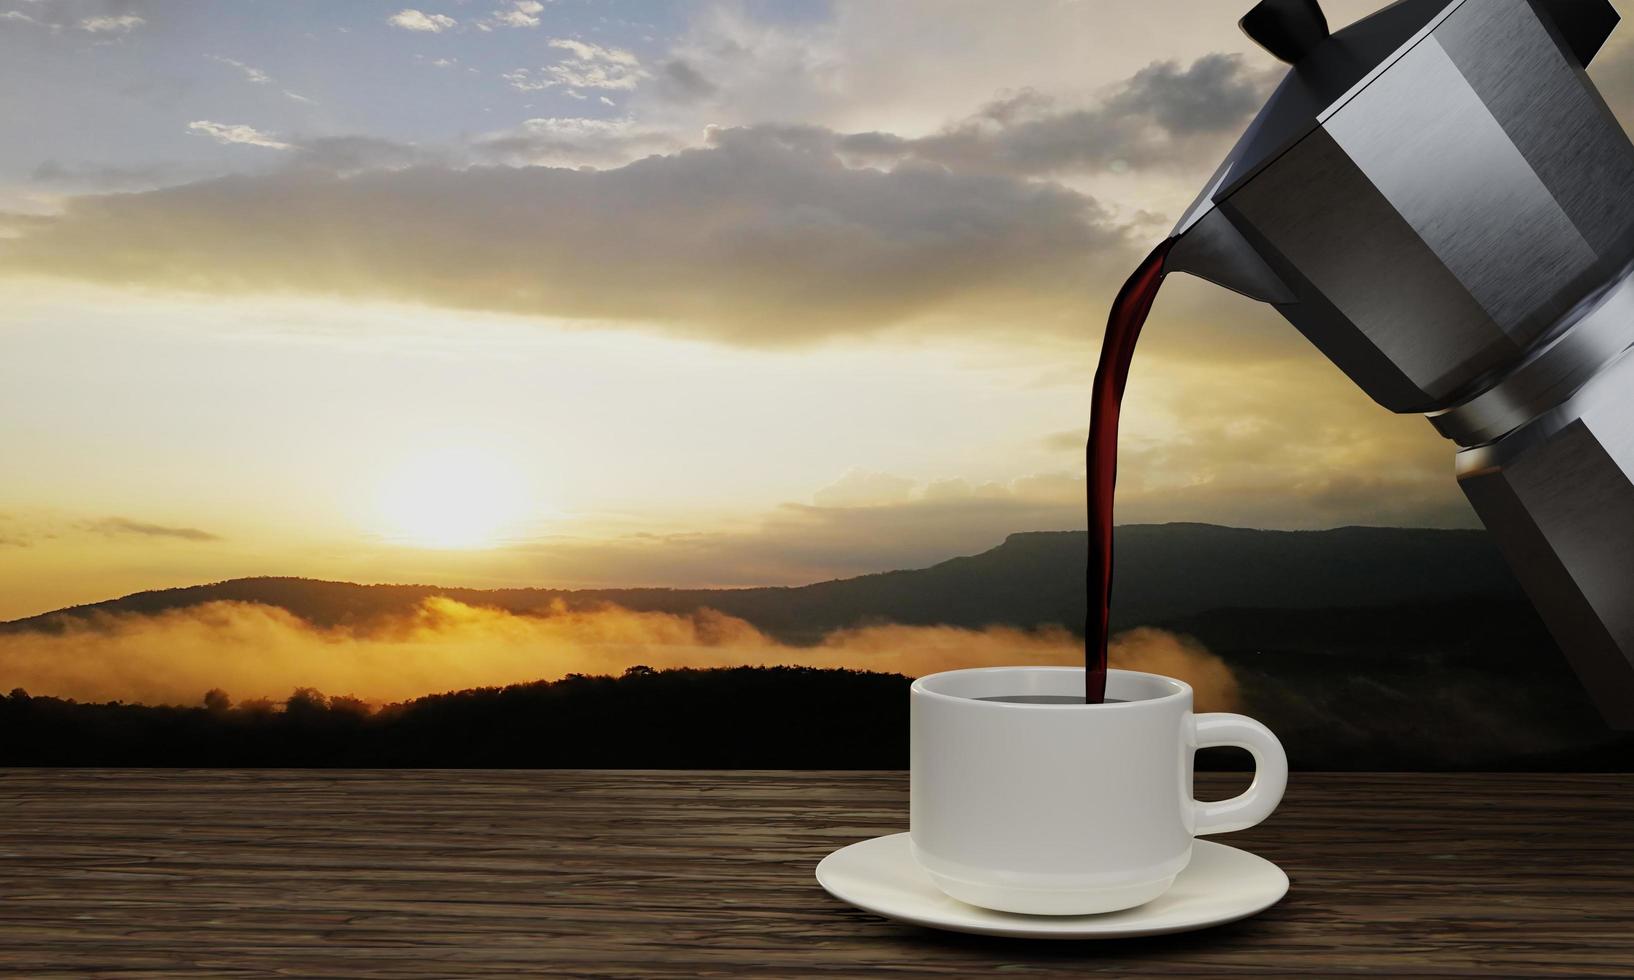 zwarte koffie in een witte mok en moka koffiepot. het houtoppervlak of de boomschors heeft 's ochtends een achtergrond in de pijnbomen en bergketens. de zon komt op. 3D-rendering foto